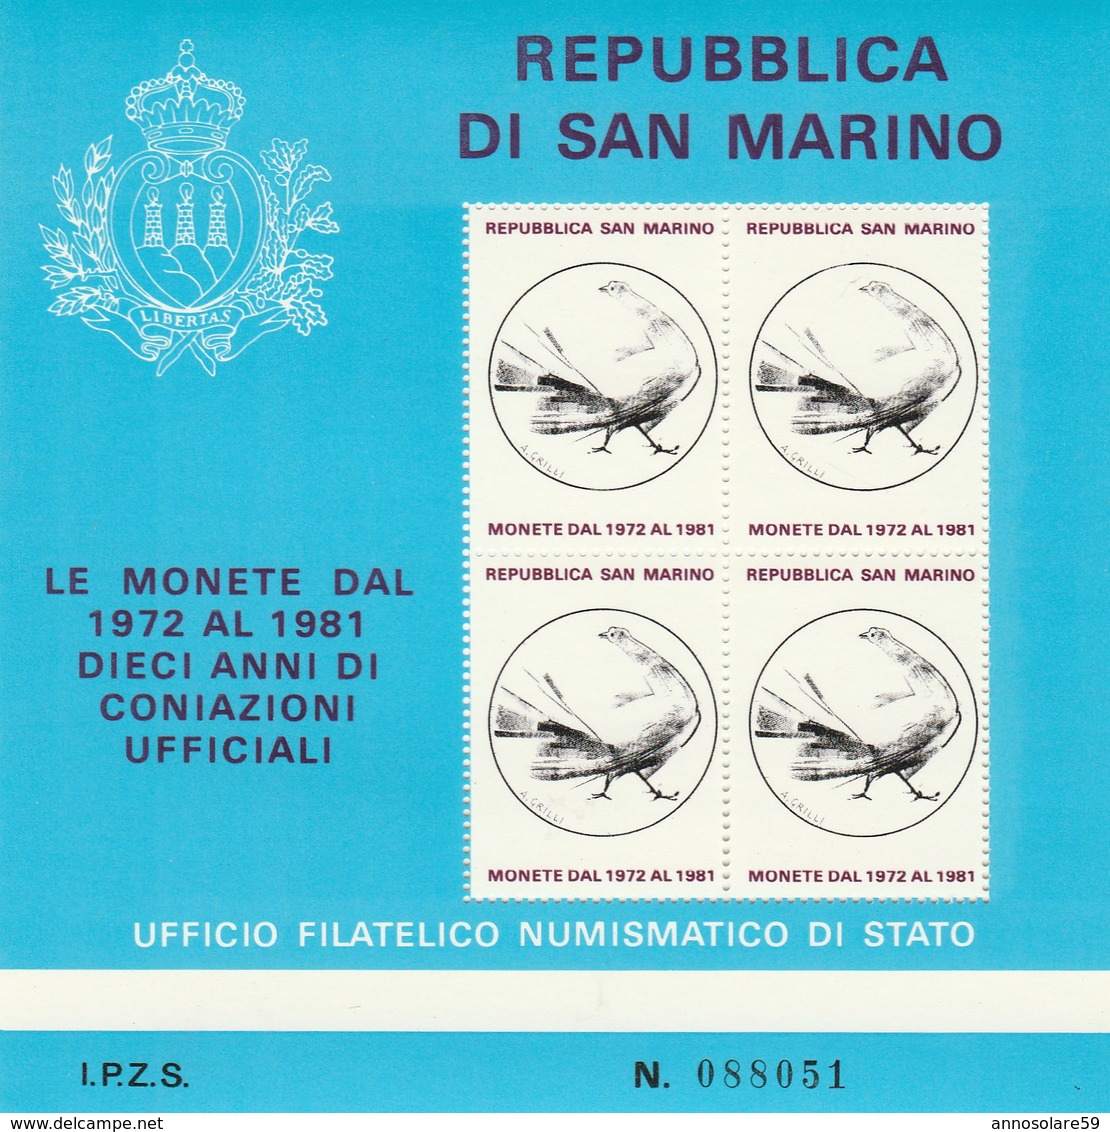 REPUBBLICA DI S. MARINO - LE MONETE DAL 1972 AL 1981 - FOGLIETTO FILATELICO (RARISSIMO) - NUOVO - LEGGI - Events & Gedenkfeiern